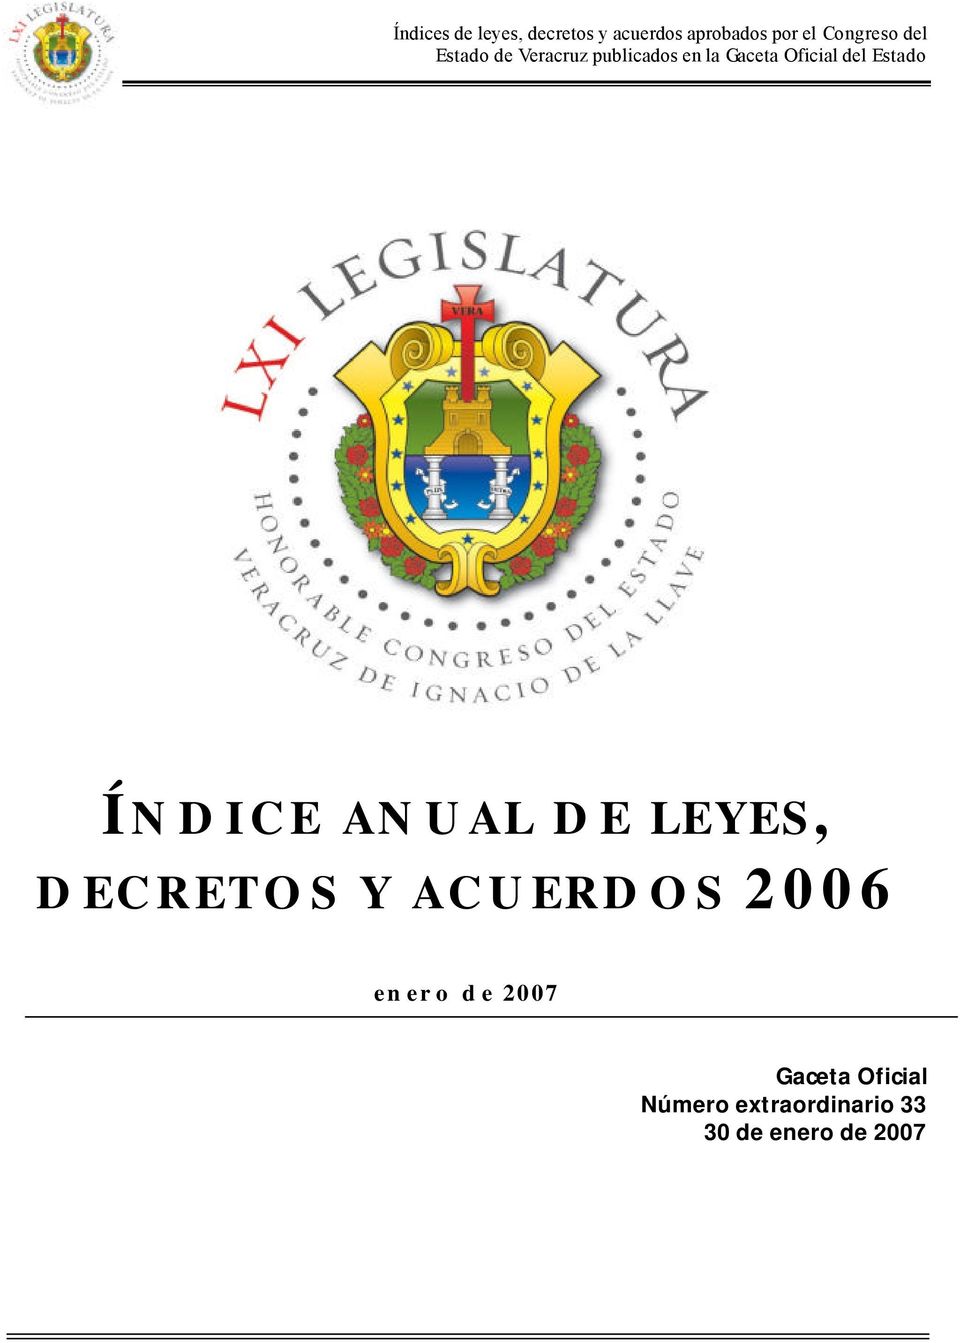 Oficial del Estado ÍNDICE ANUAL DE LEYES, DECRETOS Y ACUERDOS